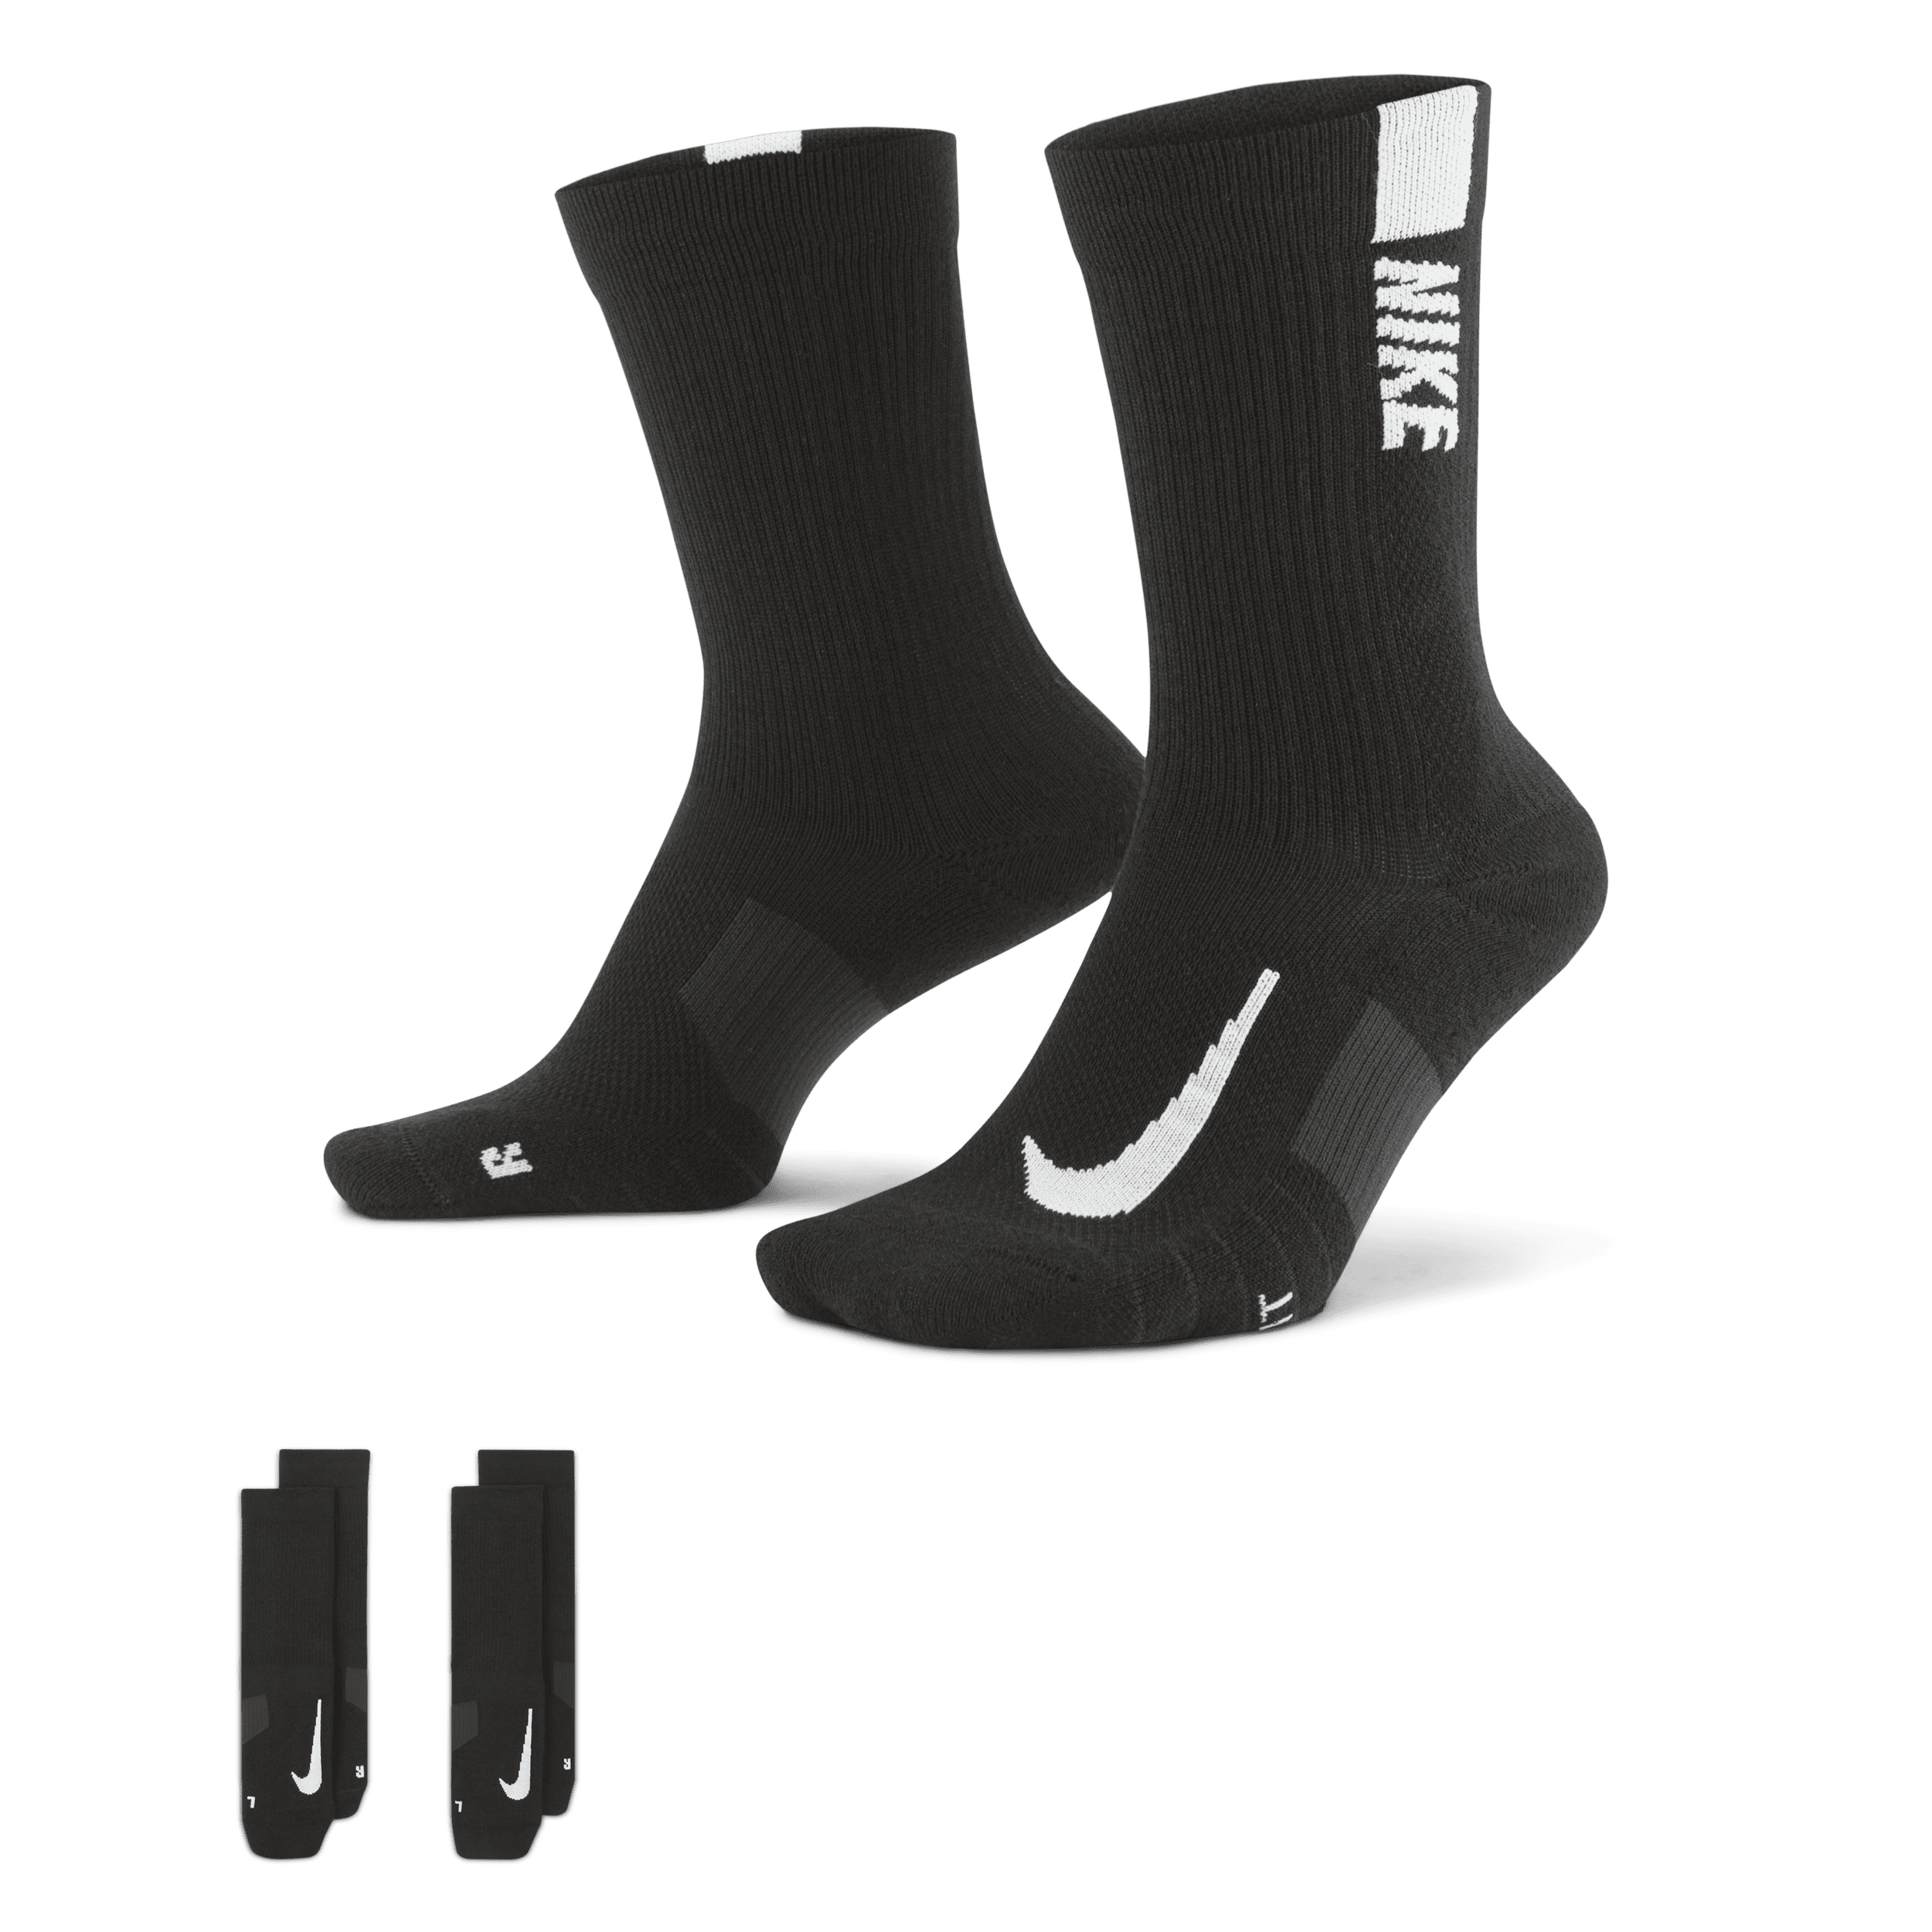 Calzettoni Nike Multiplier (2 paia) - Nero